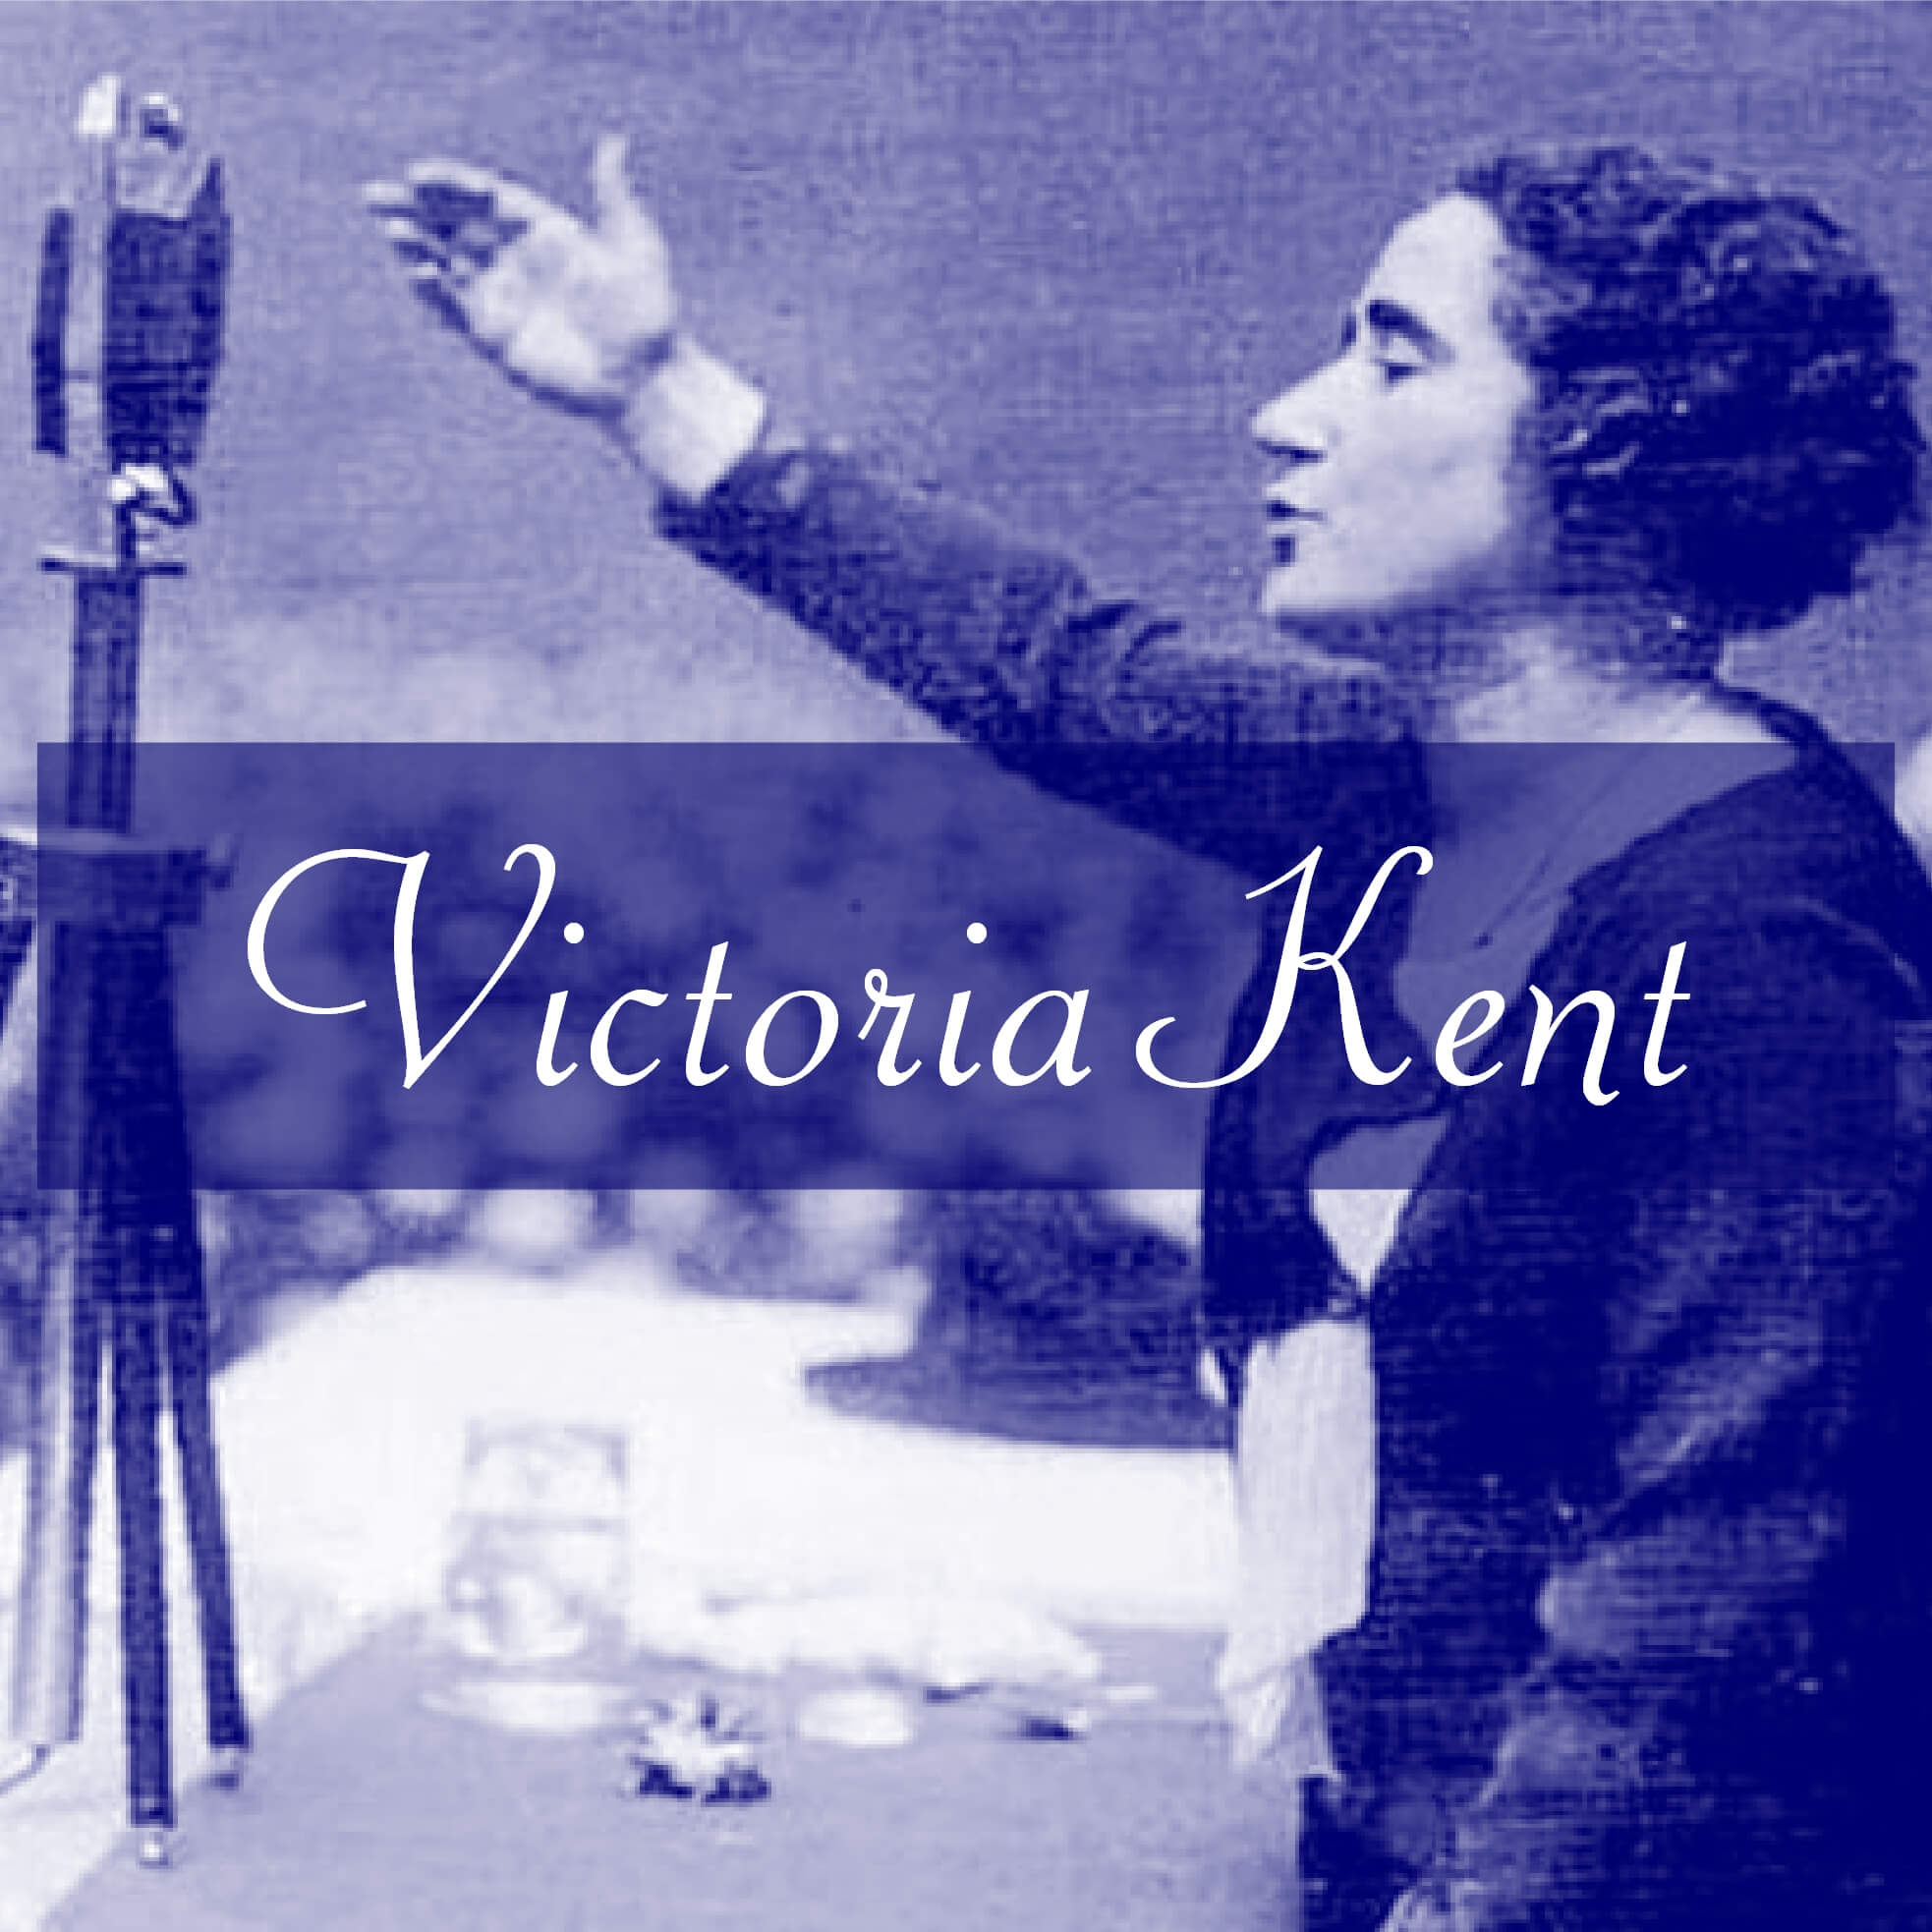 Victoria Kent Malaga Biografia